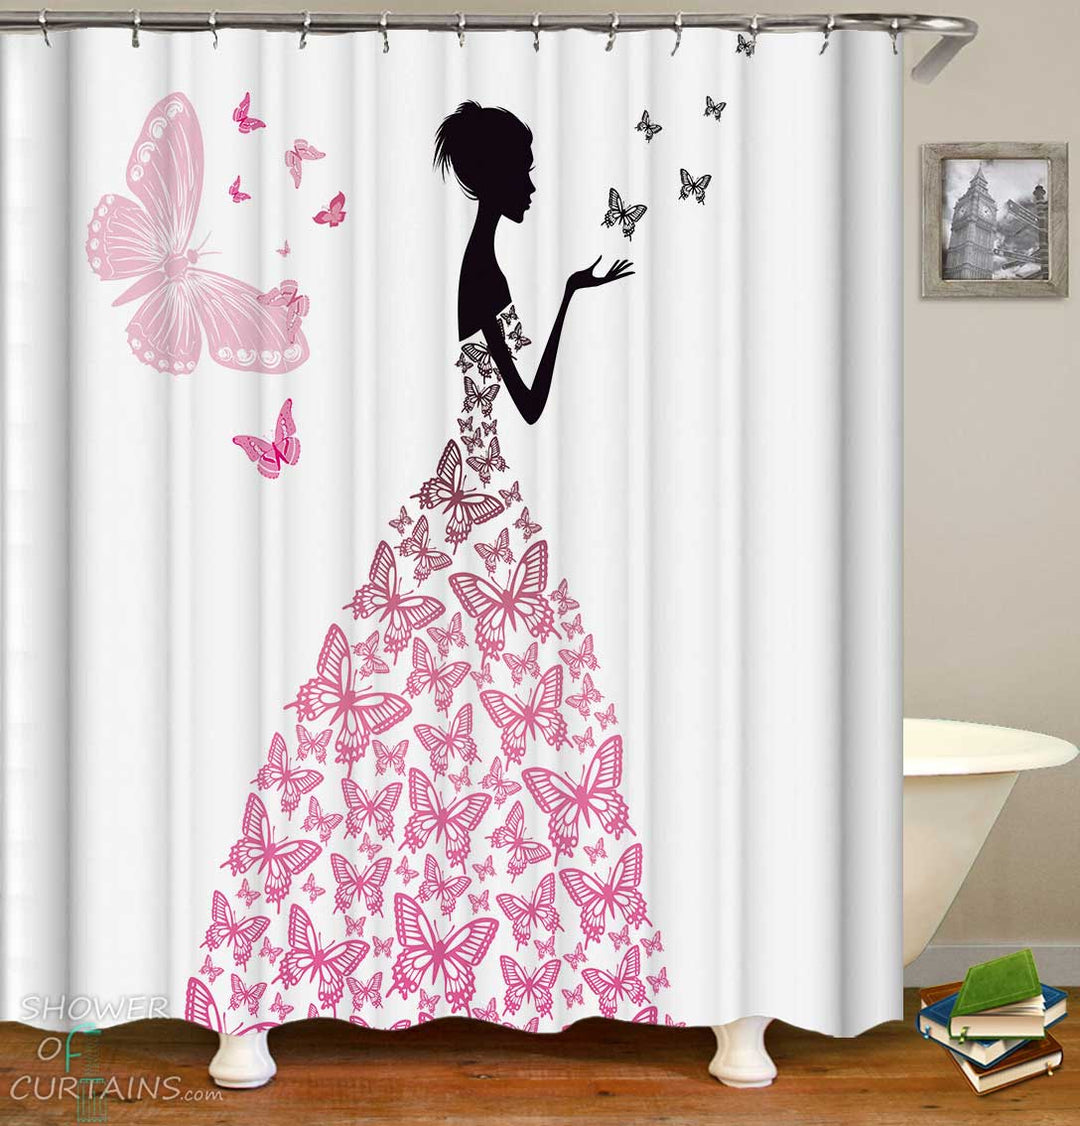 Shower Curtains with Butterflies Dress 